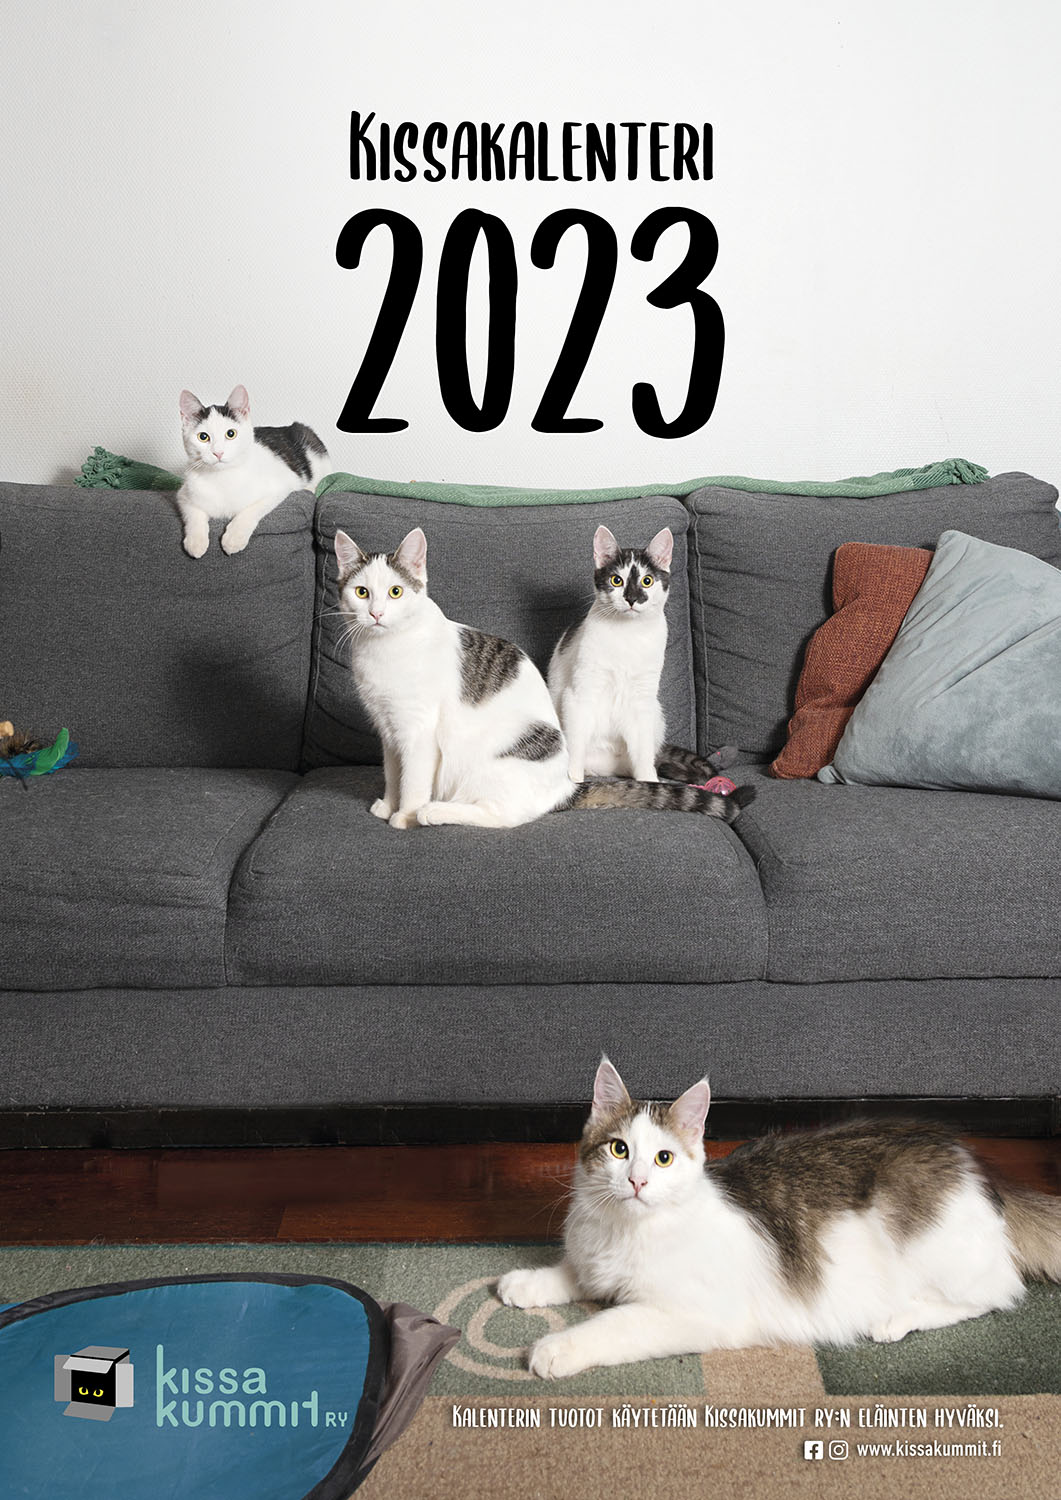 Kissakalenteri 2023 - Kissakummit ry